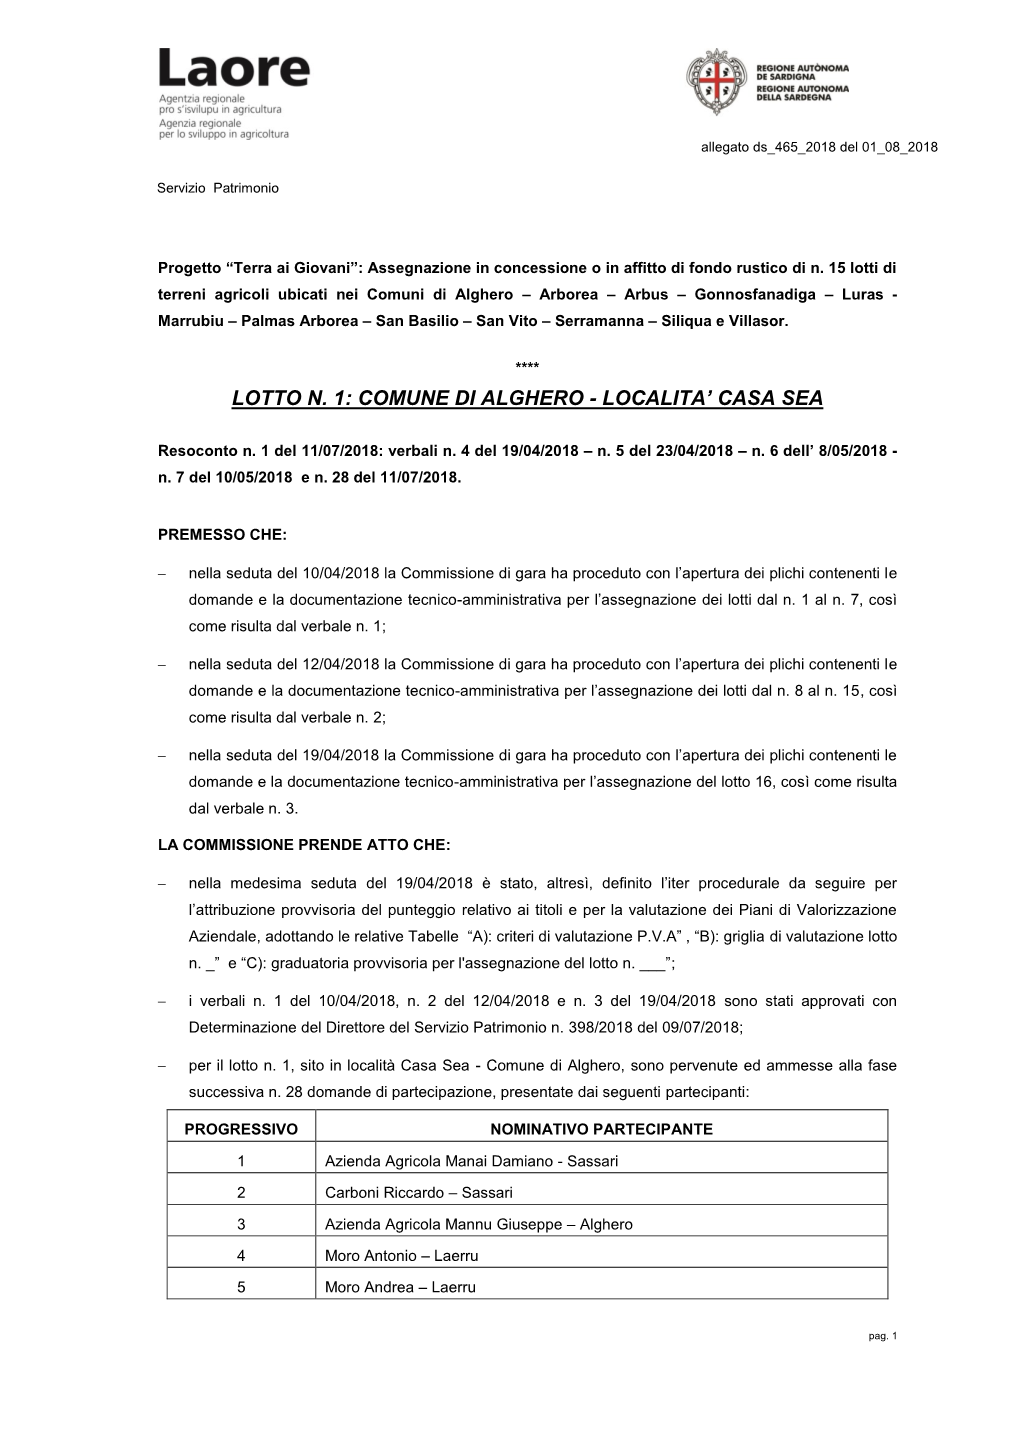 Lotto N. 1: Comune Di Alghero - Localita’ Casa Sea